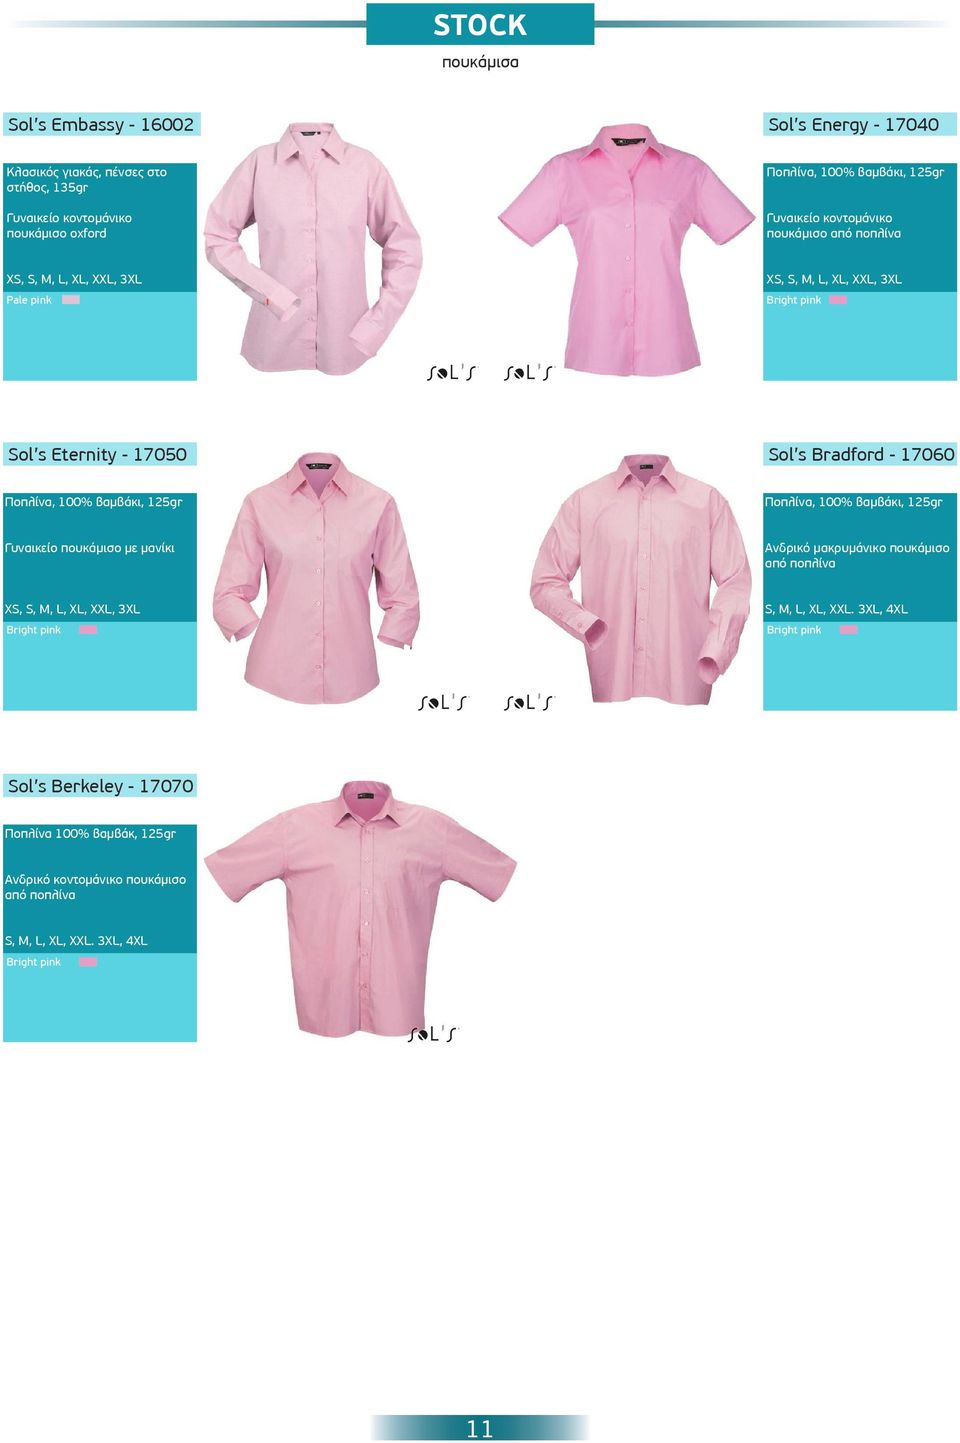 17060 Ποπλίνα, 100% βαμβάκι, 125gr Ποπλίνα, 100% βαμβάκι, 125gr Γυναικείο πουκάμισο με μανίκι Ανδρικό μακρυμάνικο πουκάμισο από ποπλίνα XS,, 3XL